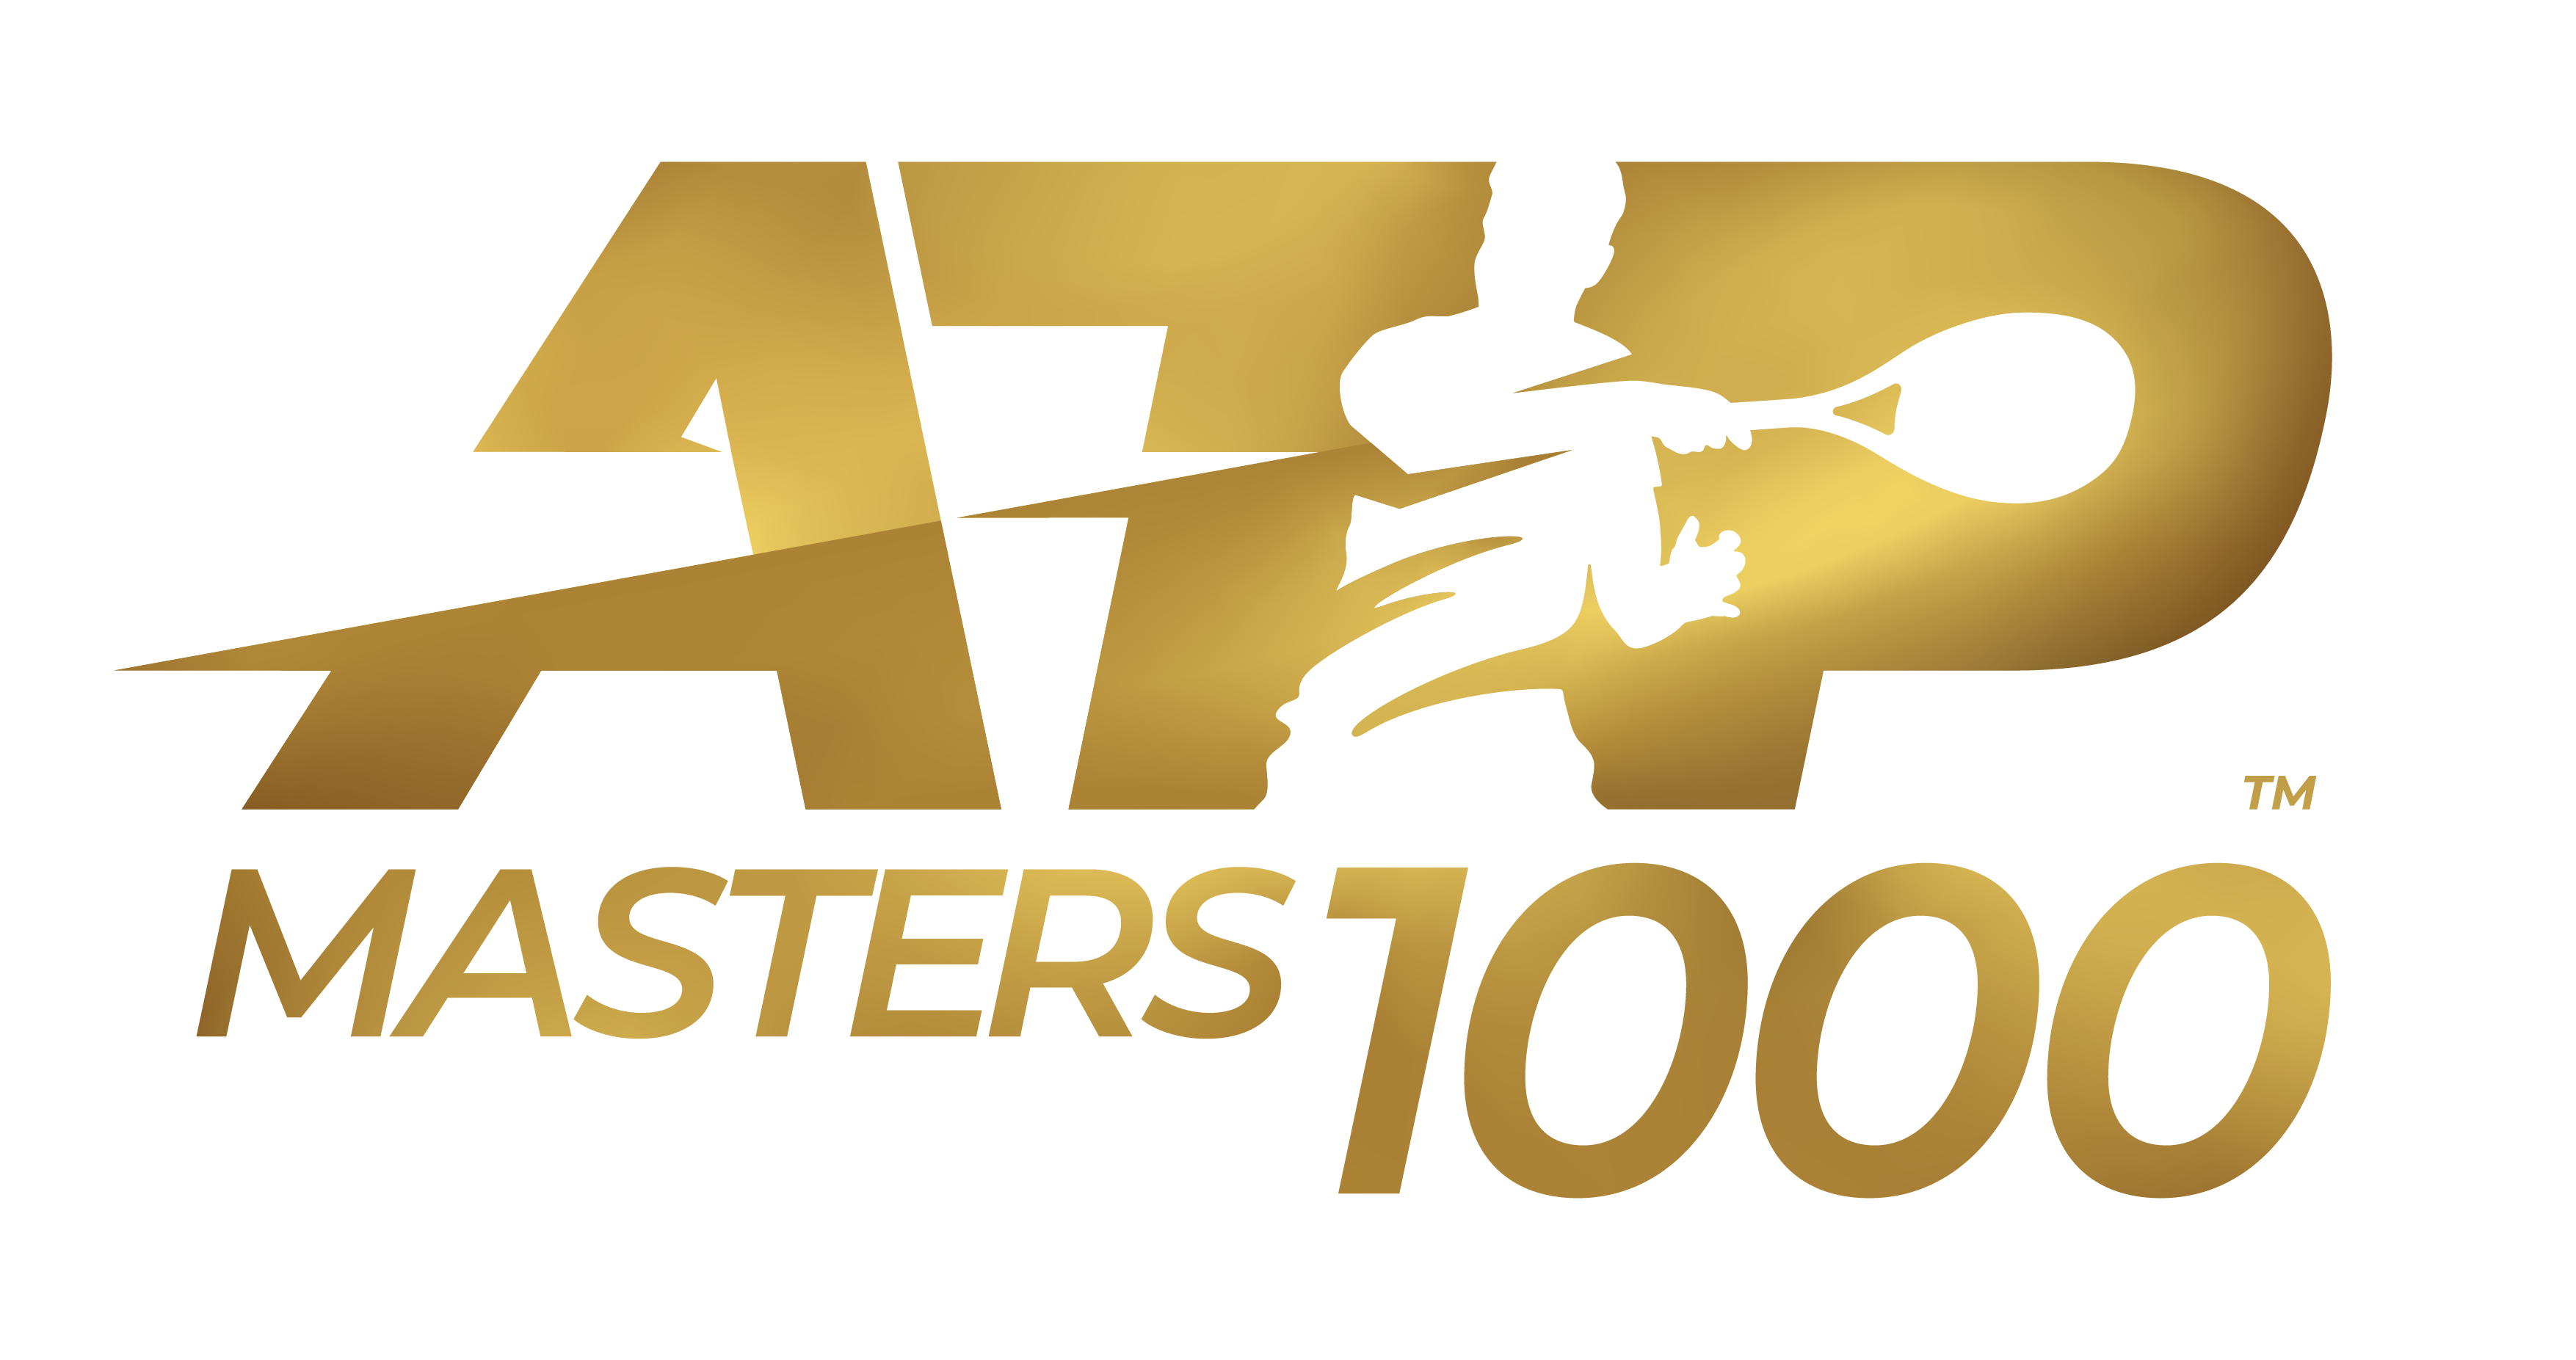 ATP Masters 1000